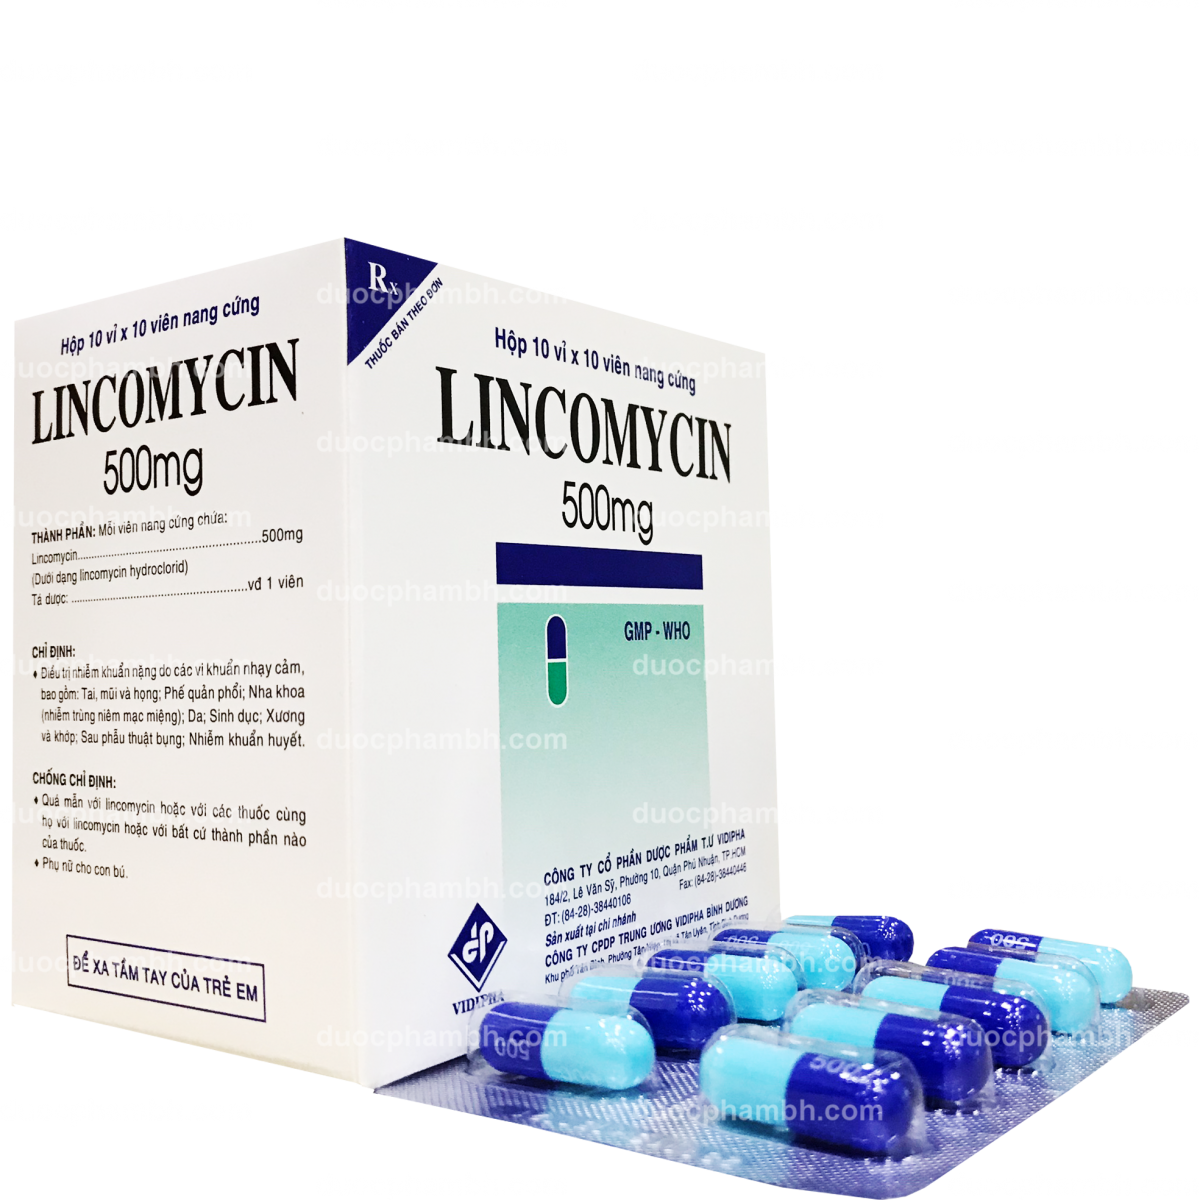 LINCOMYCIN-500mg